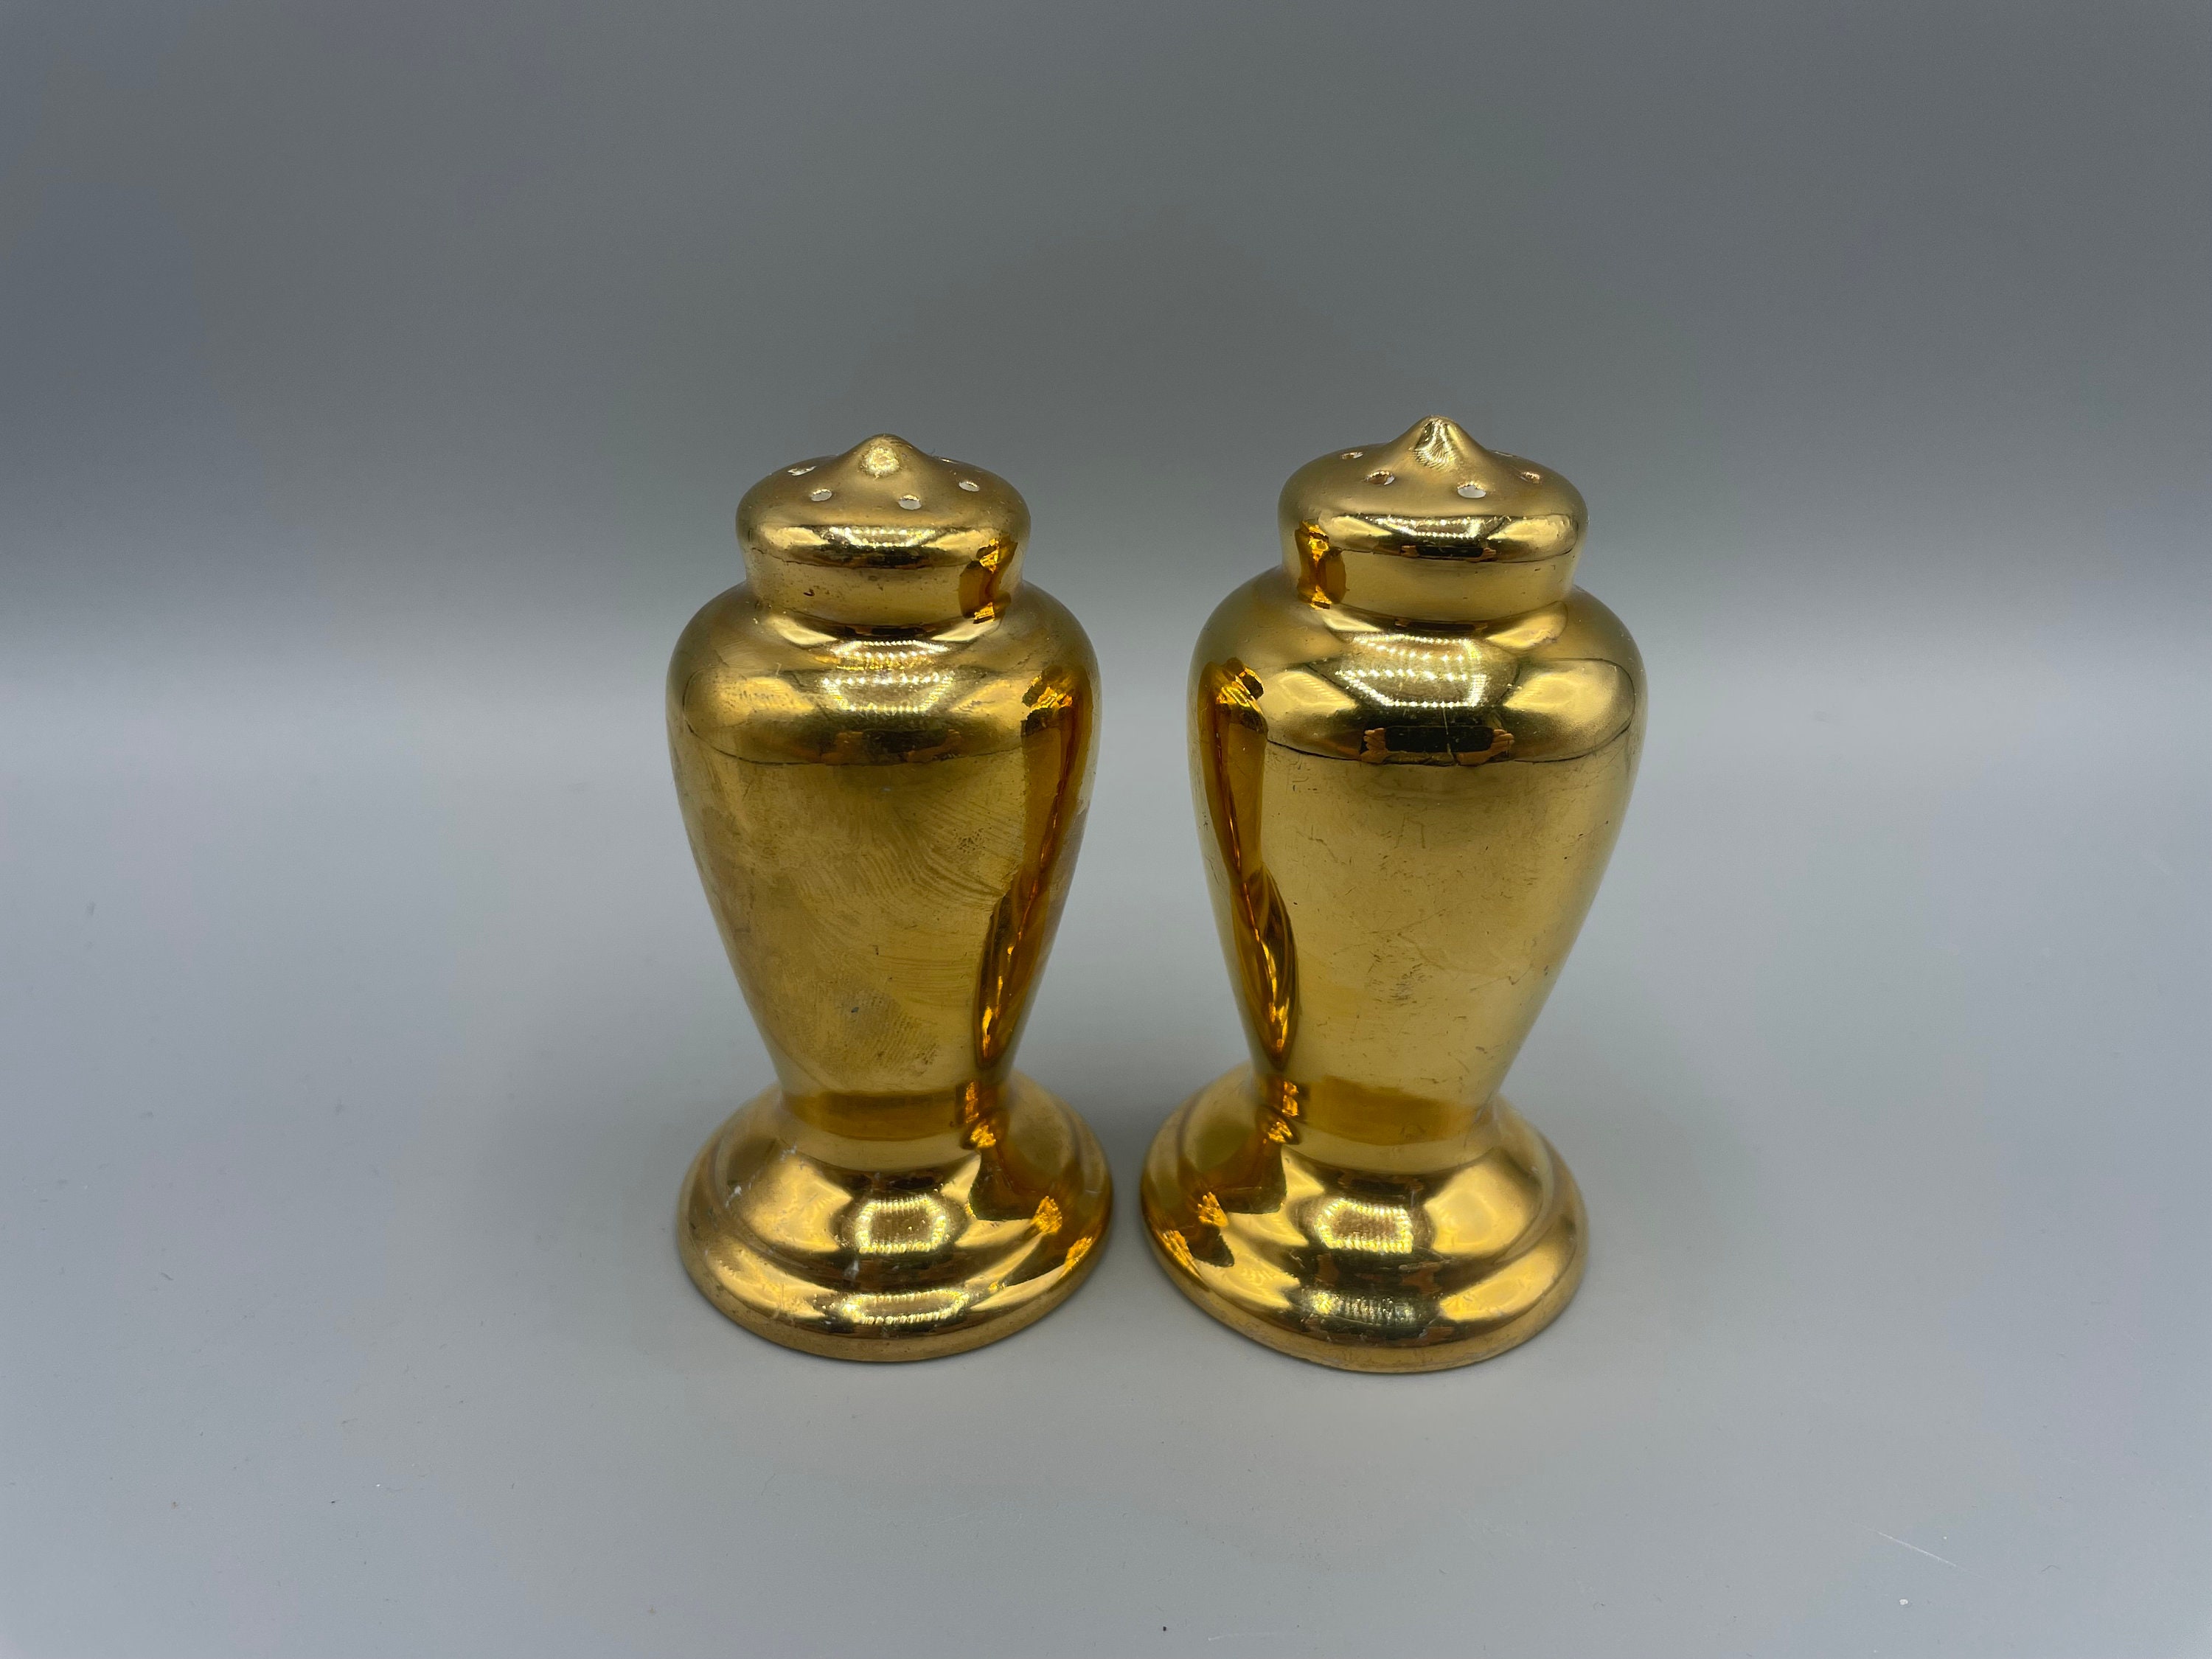 Gold Salt and Pepper Grinder Set – Golden Salt and Pepper Shaker